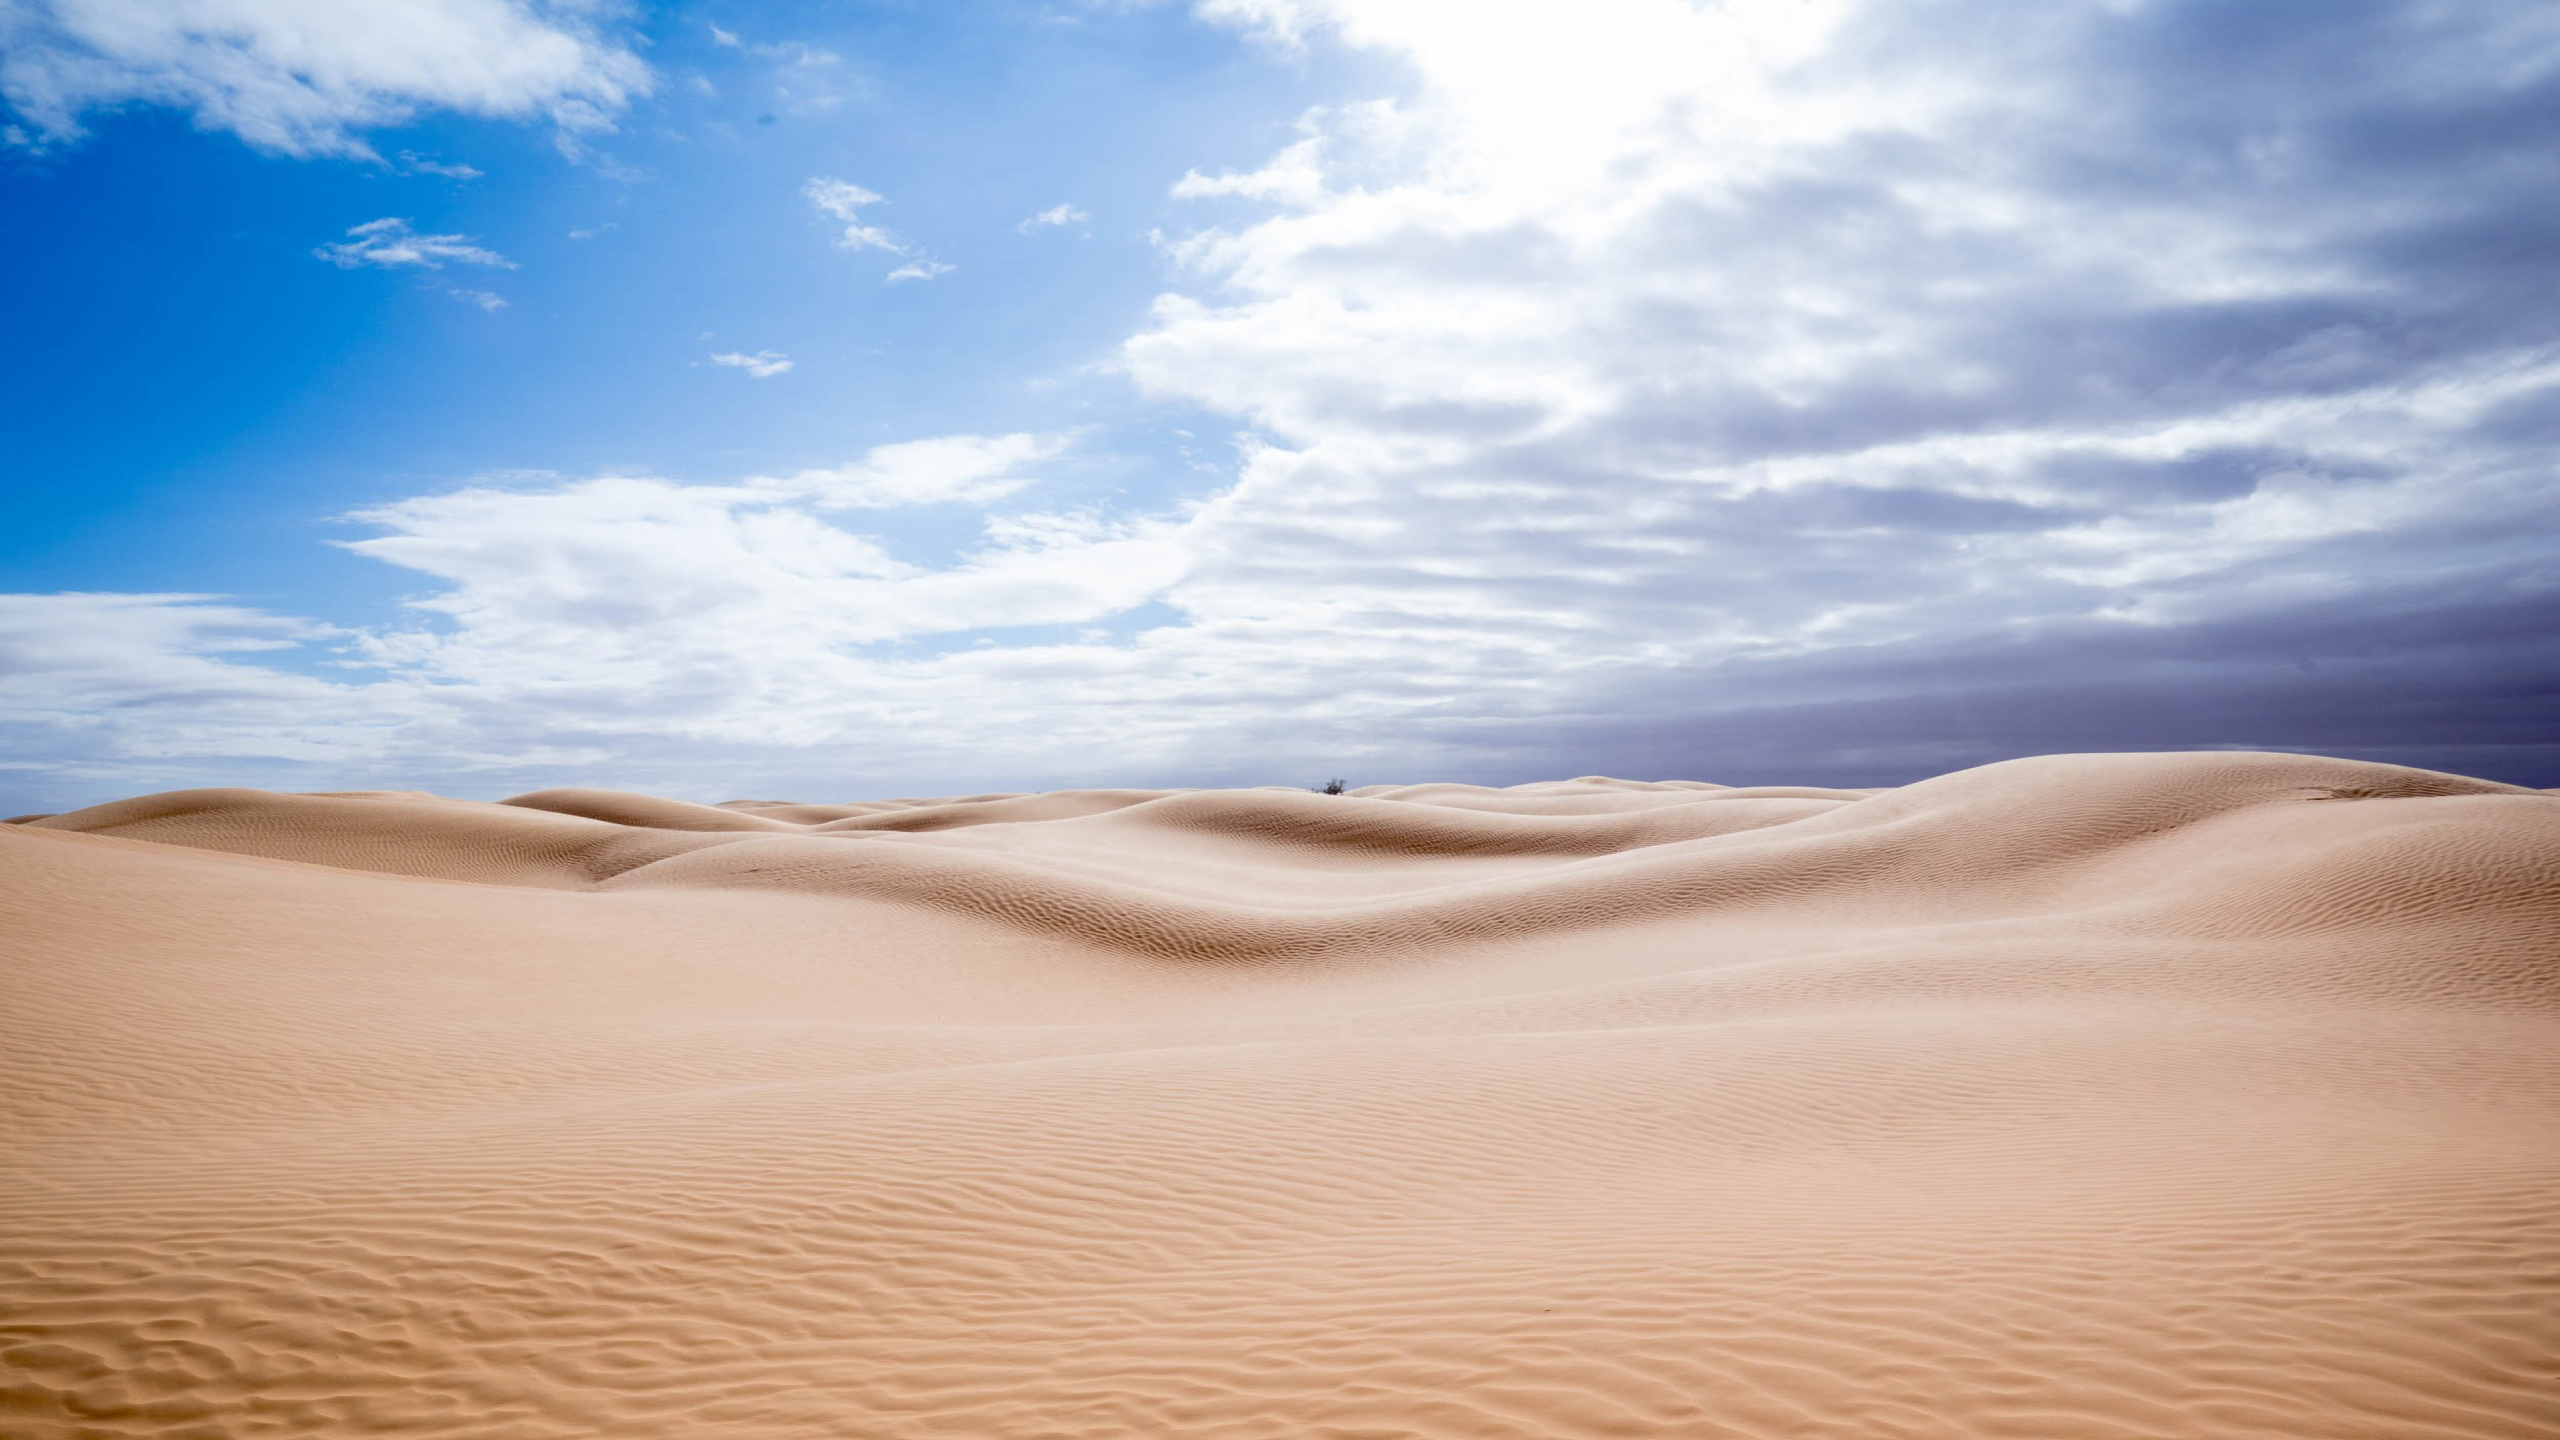 Обои обои пустыня песок солнечный свет - бесплатные картинки на Fonwall